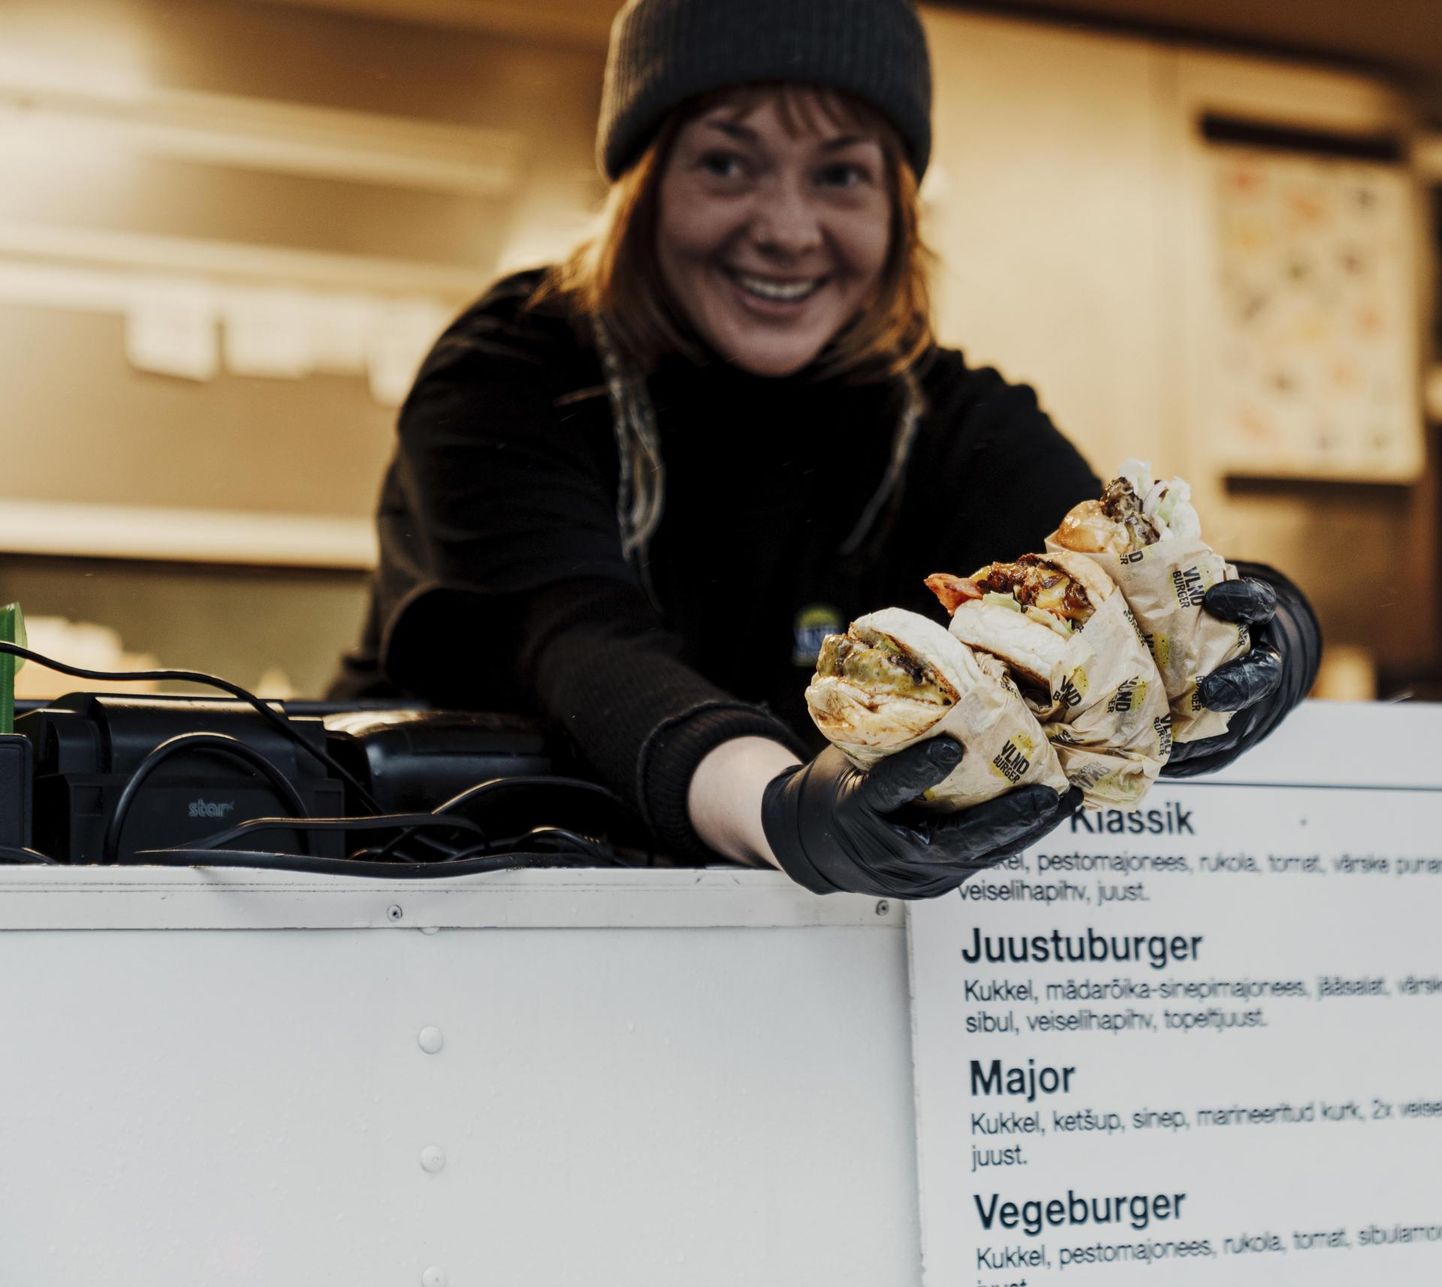 VLND Burger on Balti jaamas tegutsenud ligi viis aastat. Esimesed burgerid valmisid aga juba 2017. aastal ning 2018. aasta mais avas luugi VLND Burgeri toiduauto.